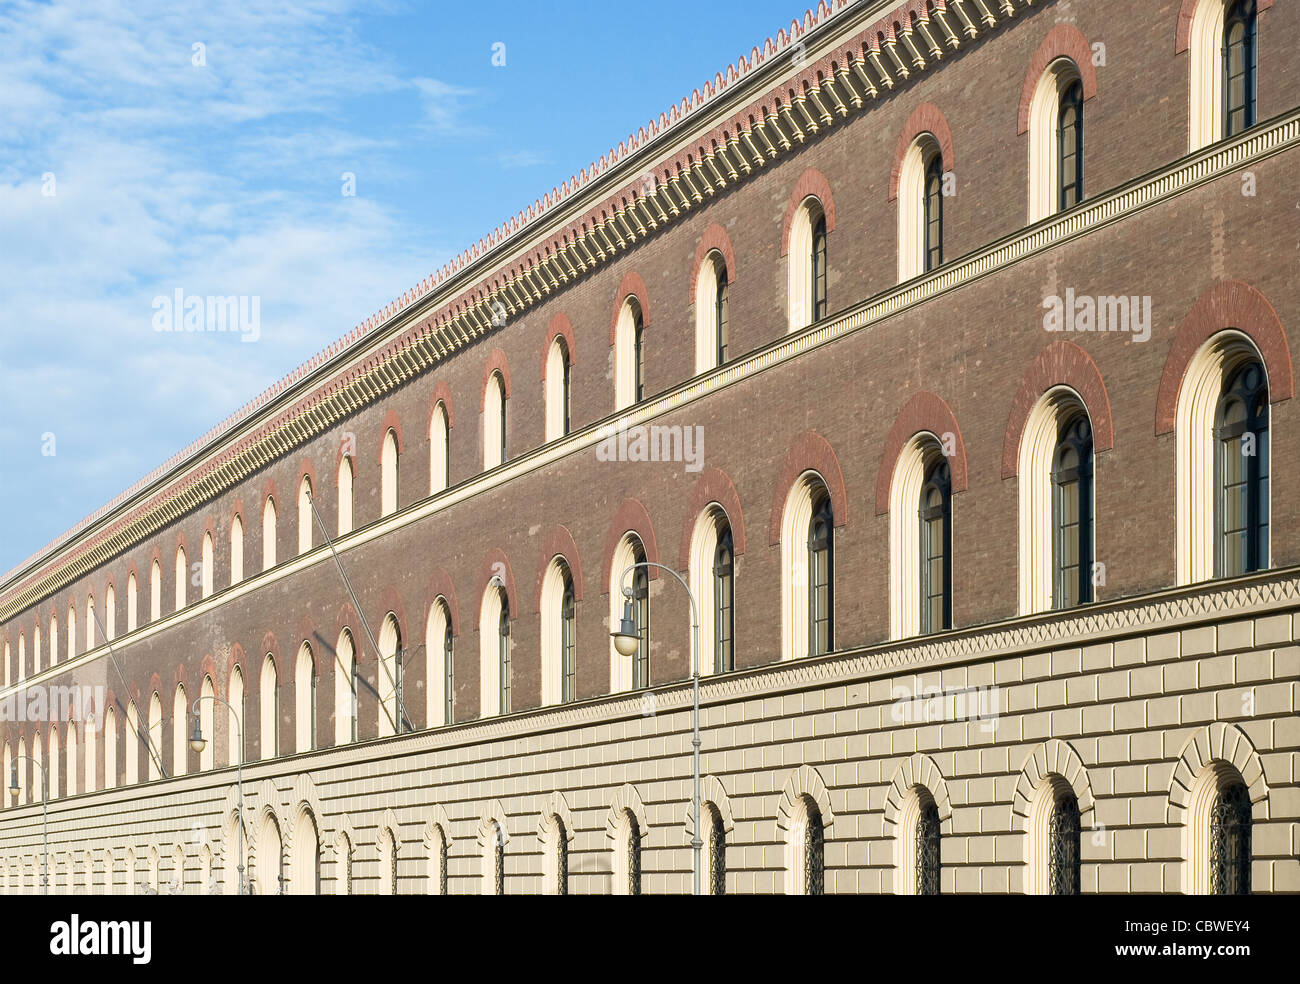 La Biblioteca del Estado de Baviera como ejemplo de arquitectura de estilo renacentista italiano Foto de stock